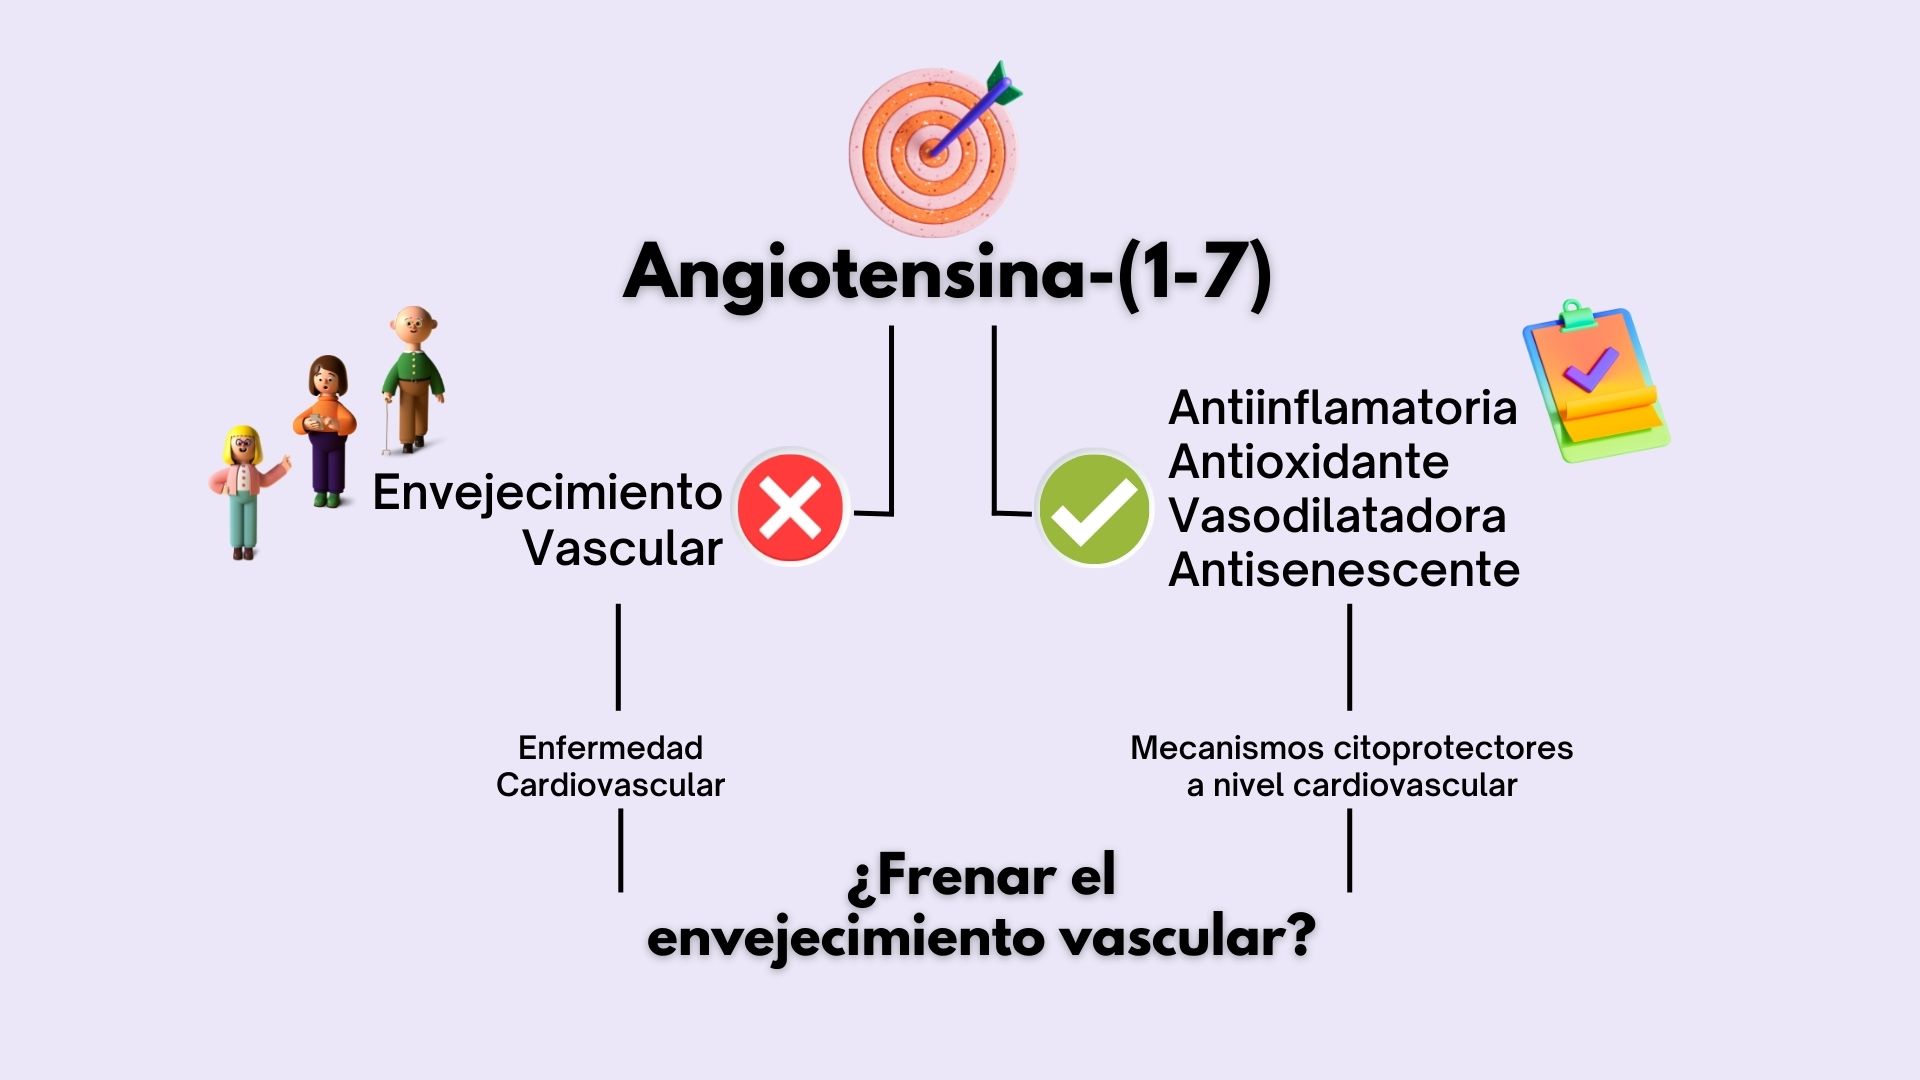 Esquema que muestra los efectos del péptido angiotensina-(1-7) con respecto al envejecimiento vascular